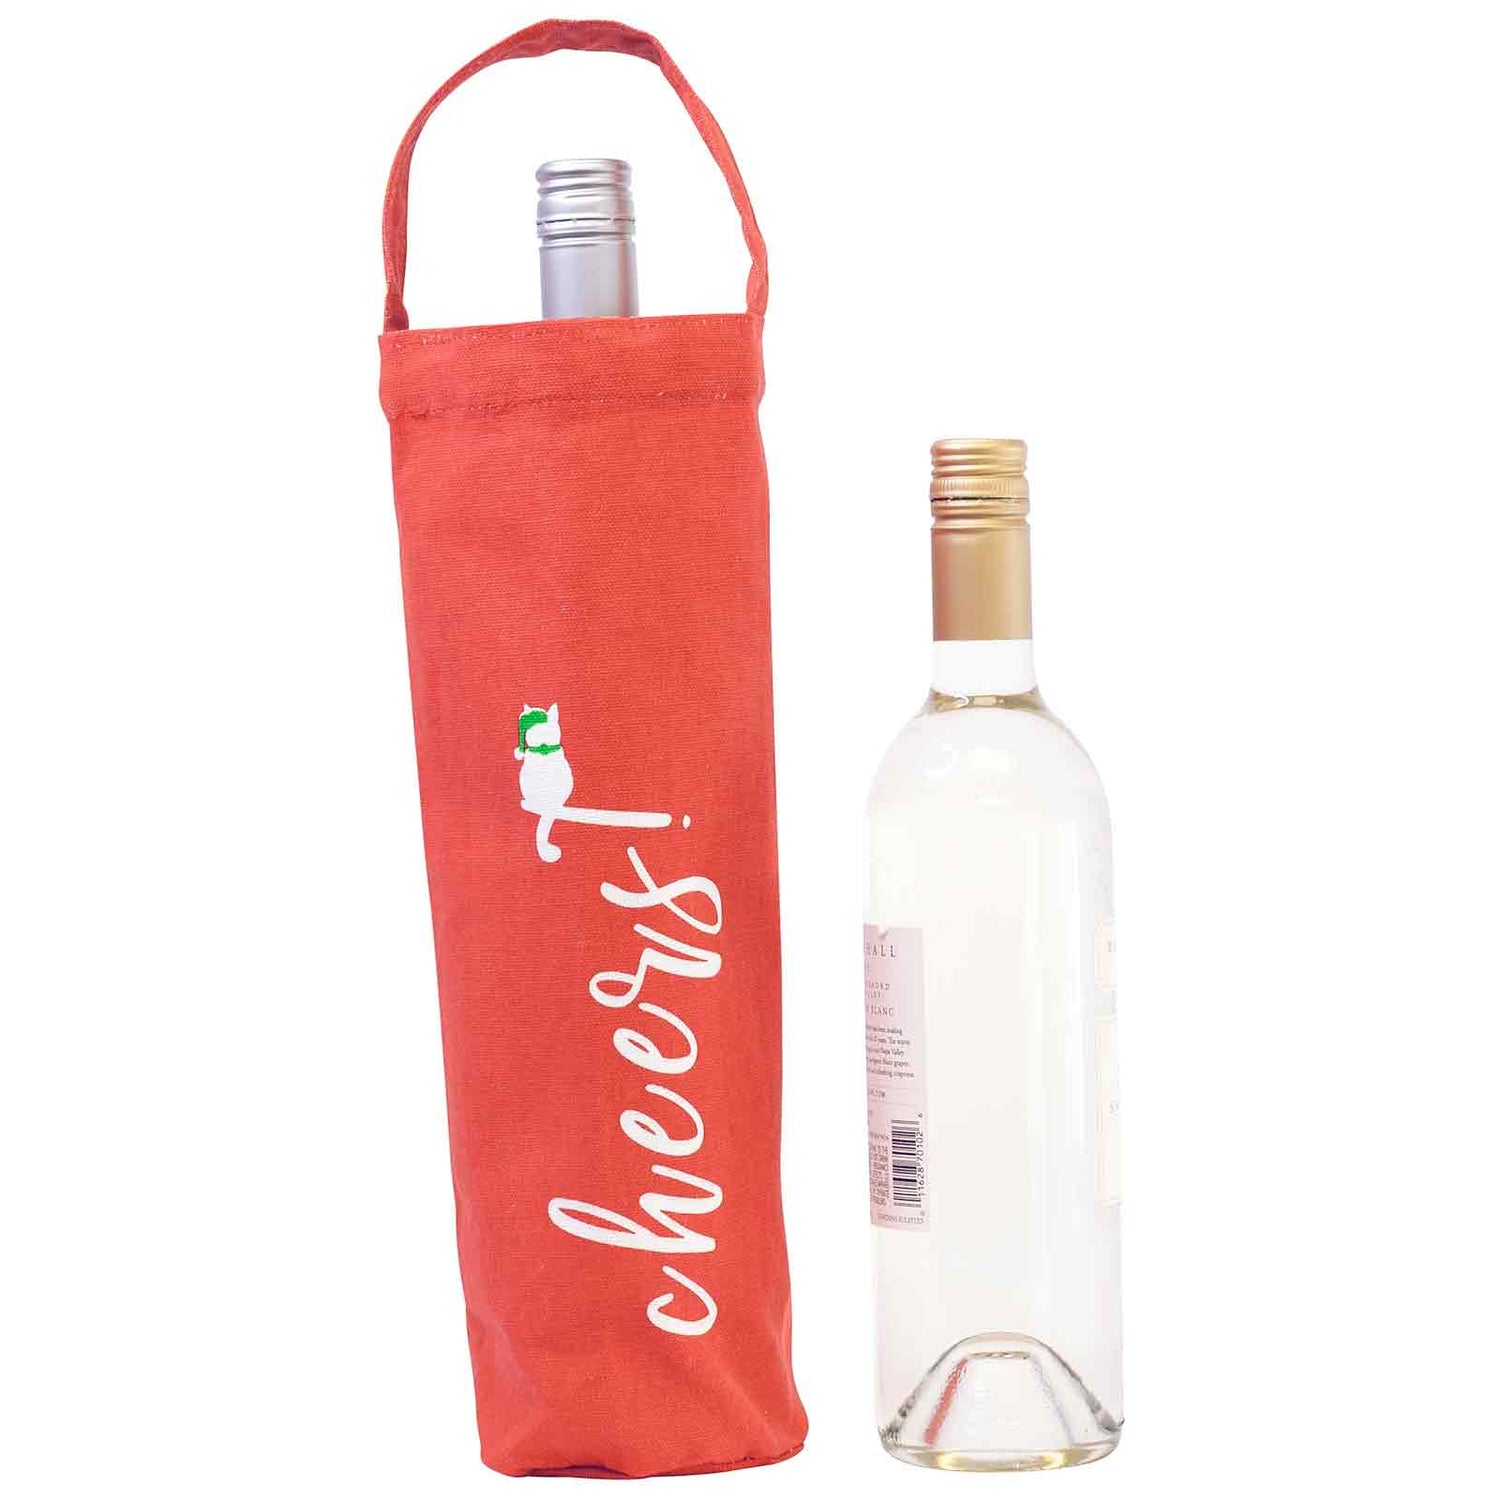 Cheers Wine Tote Gift Bag - rockflowerpaper